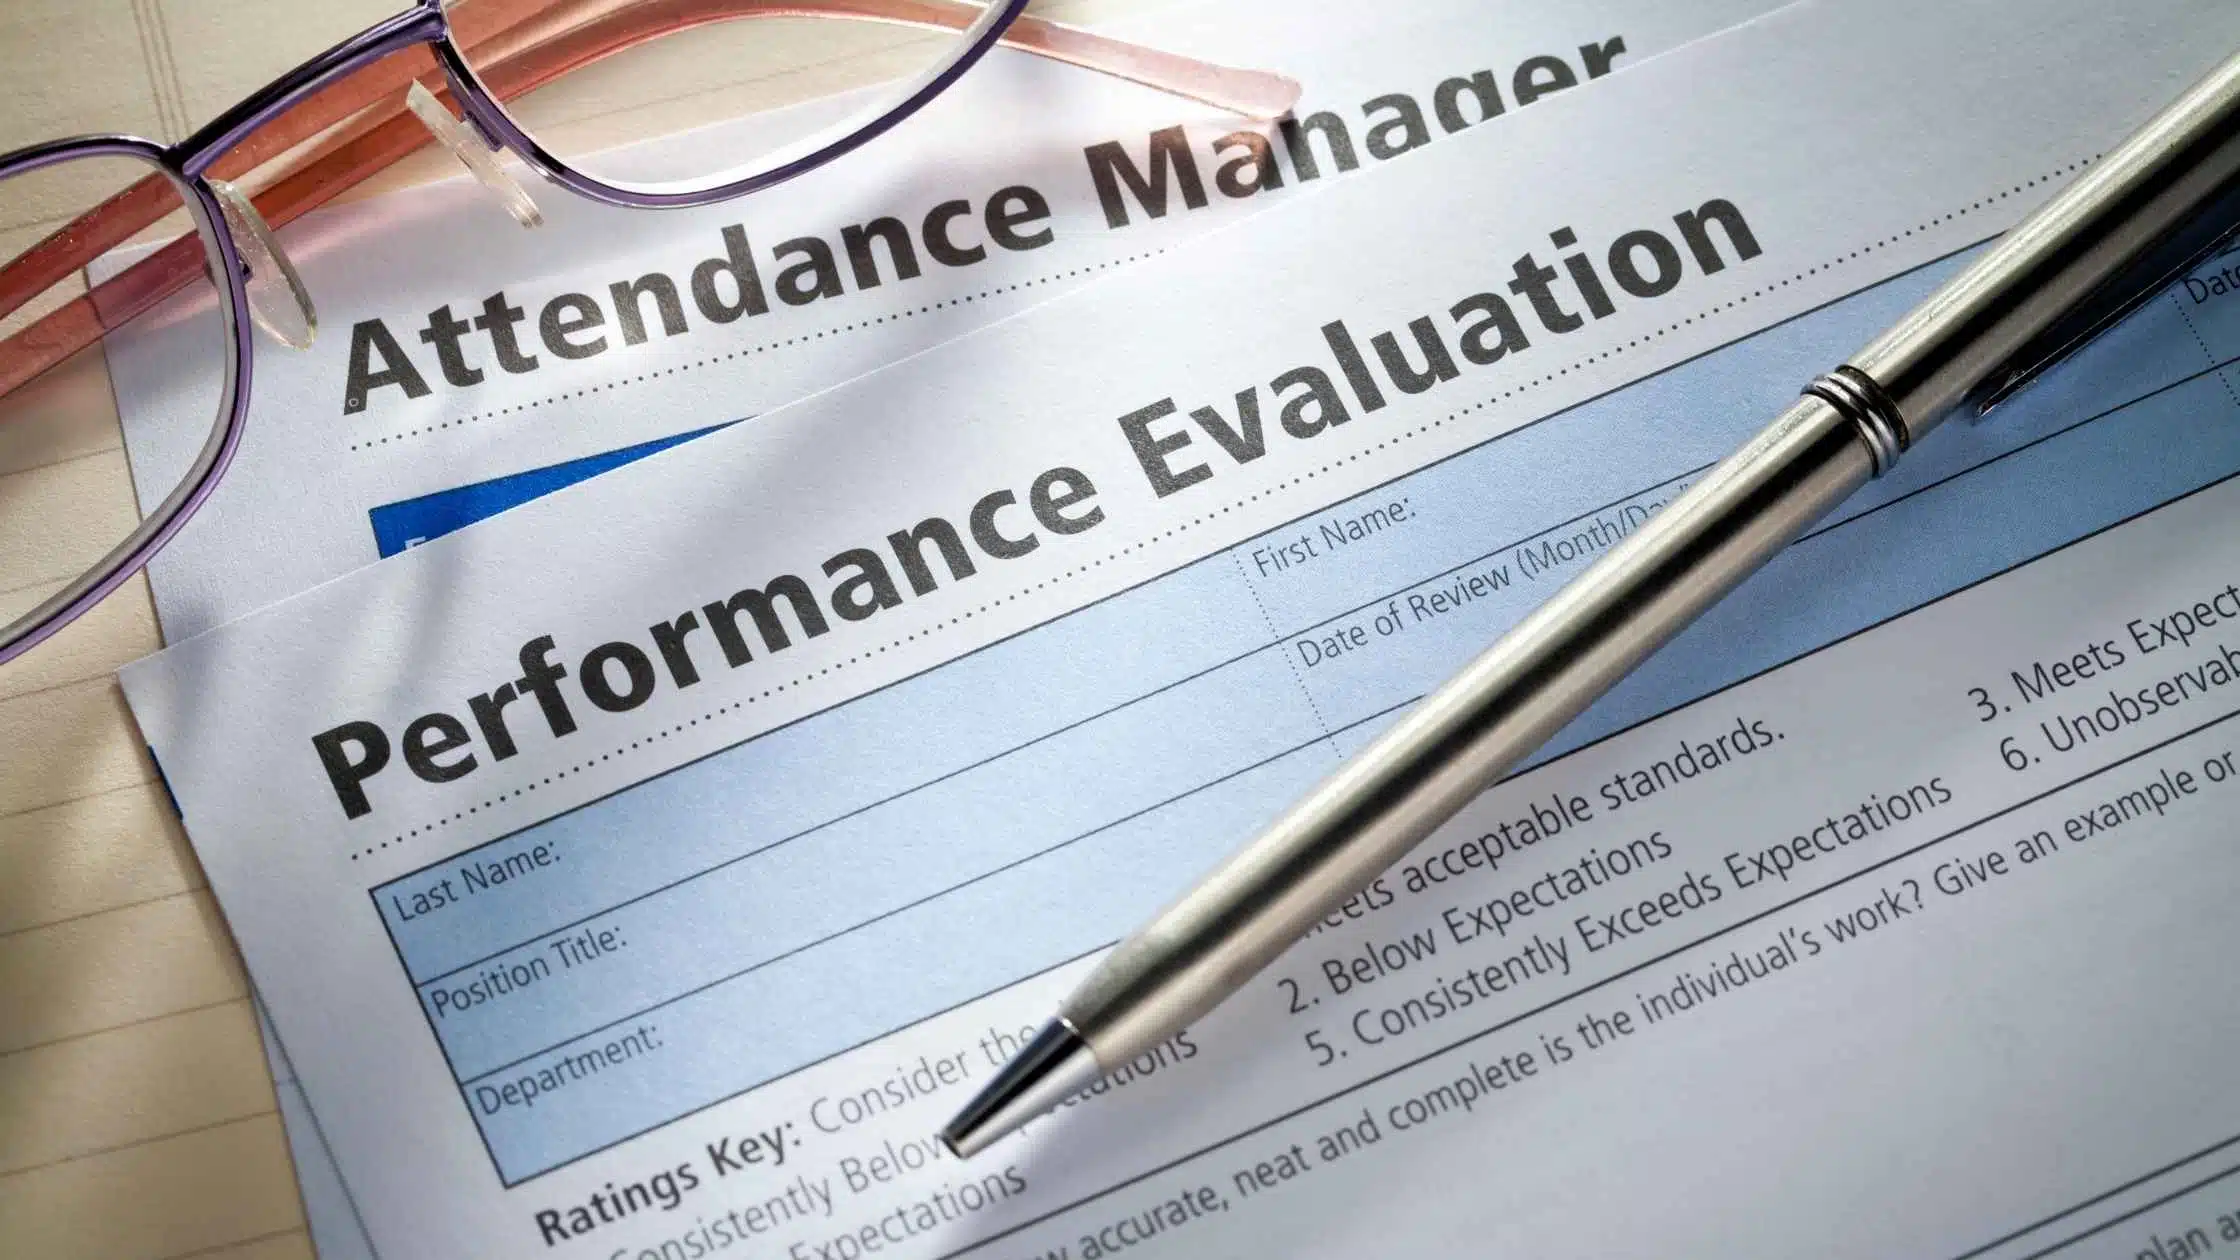 Key performance indicator berguna untuk mengukur performa kinerja dari karyawan